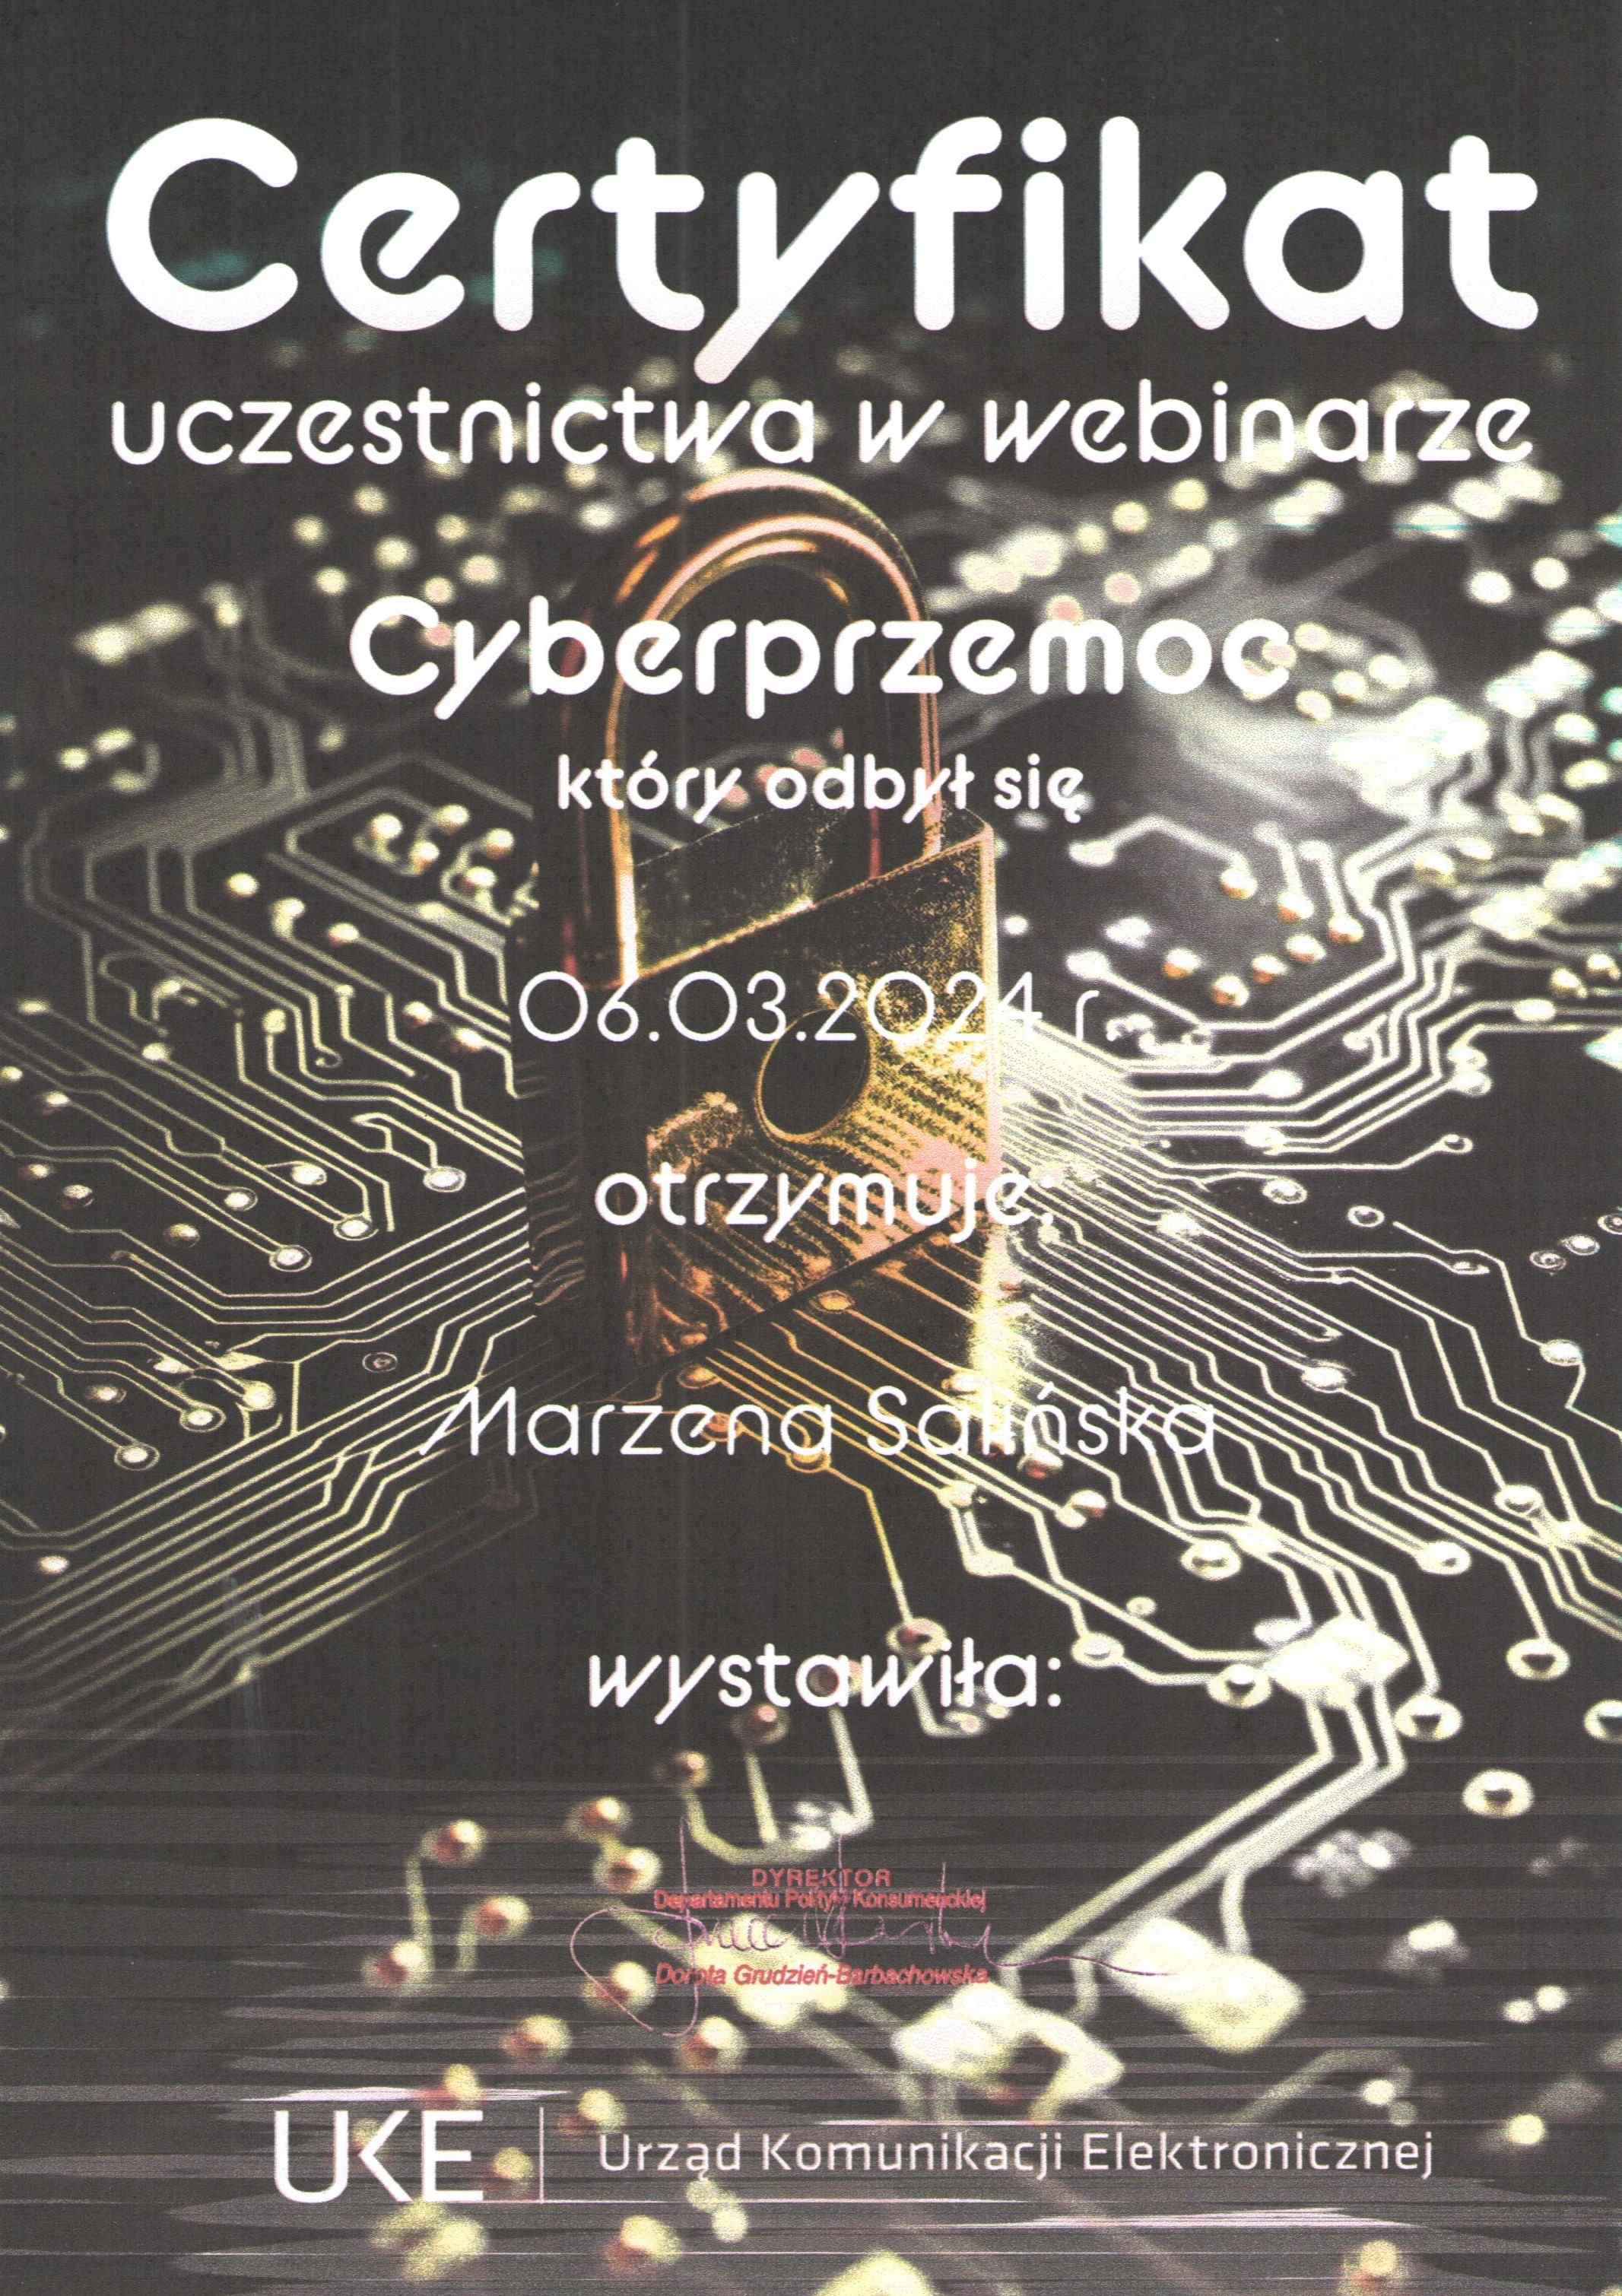 Cyberprzemoc certyfikat1